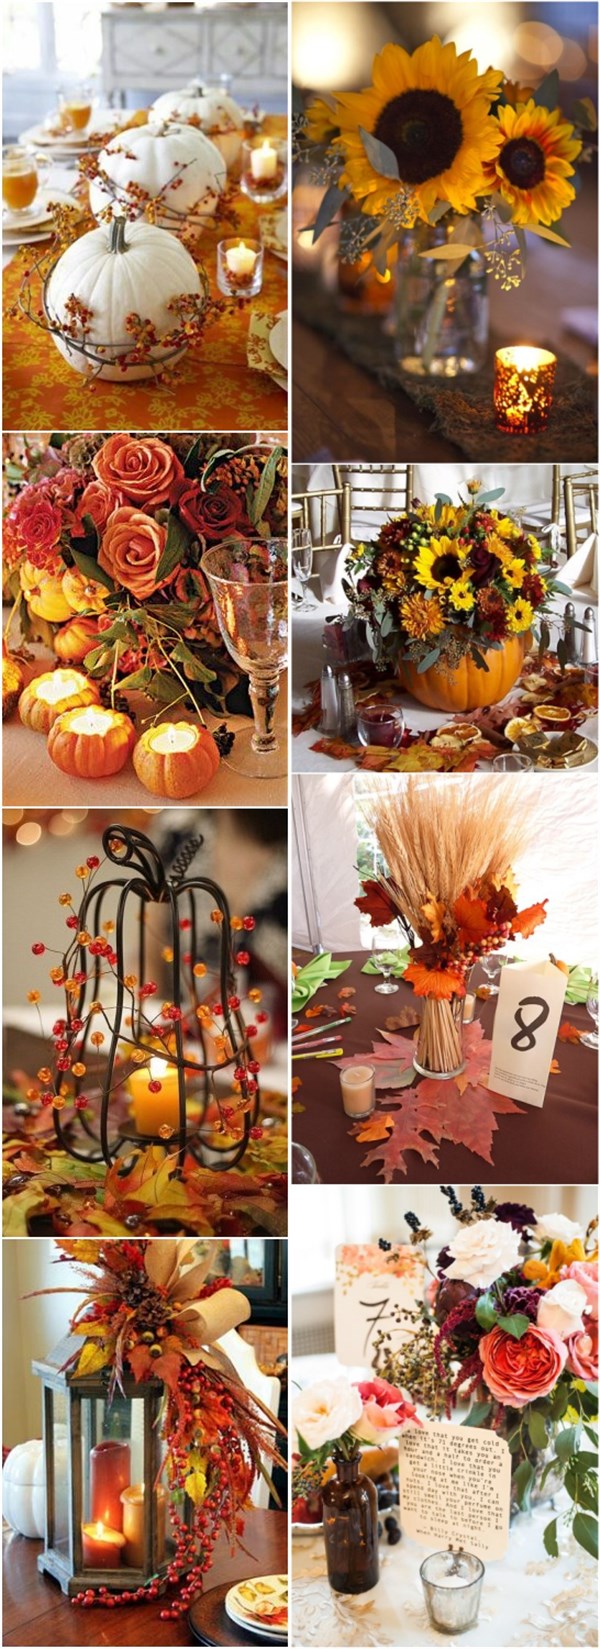 fall wedding decor ideas-autumn fall wedding centerpieces